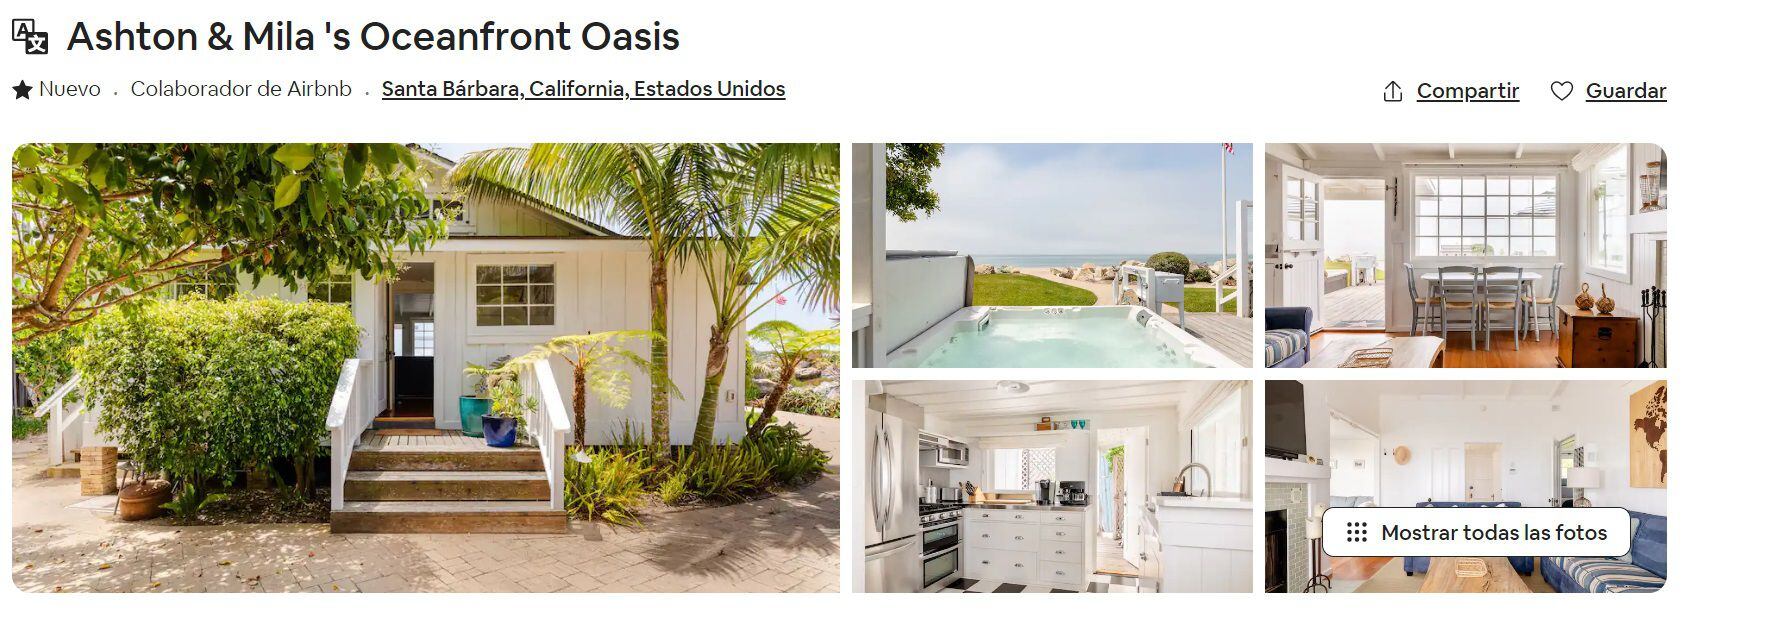 Ashton Kutcher y Mila Kunis buscaron huéspedes para su casa en la playa. (Foto: airbnb.mx)